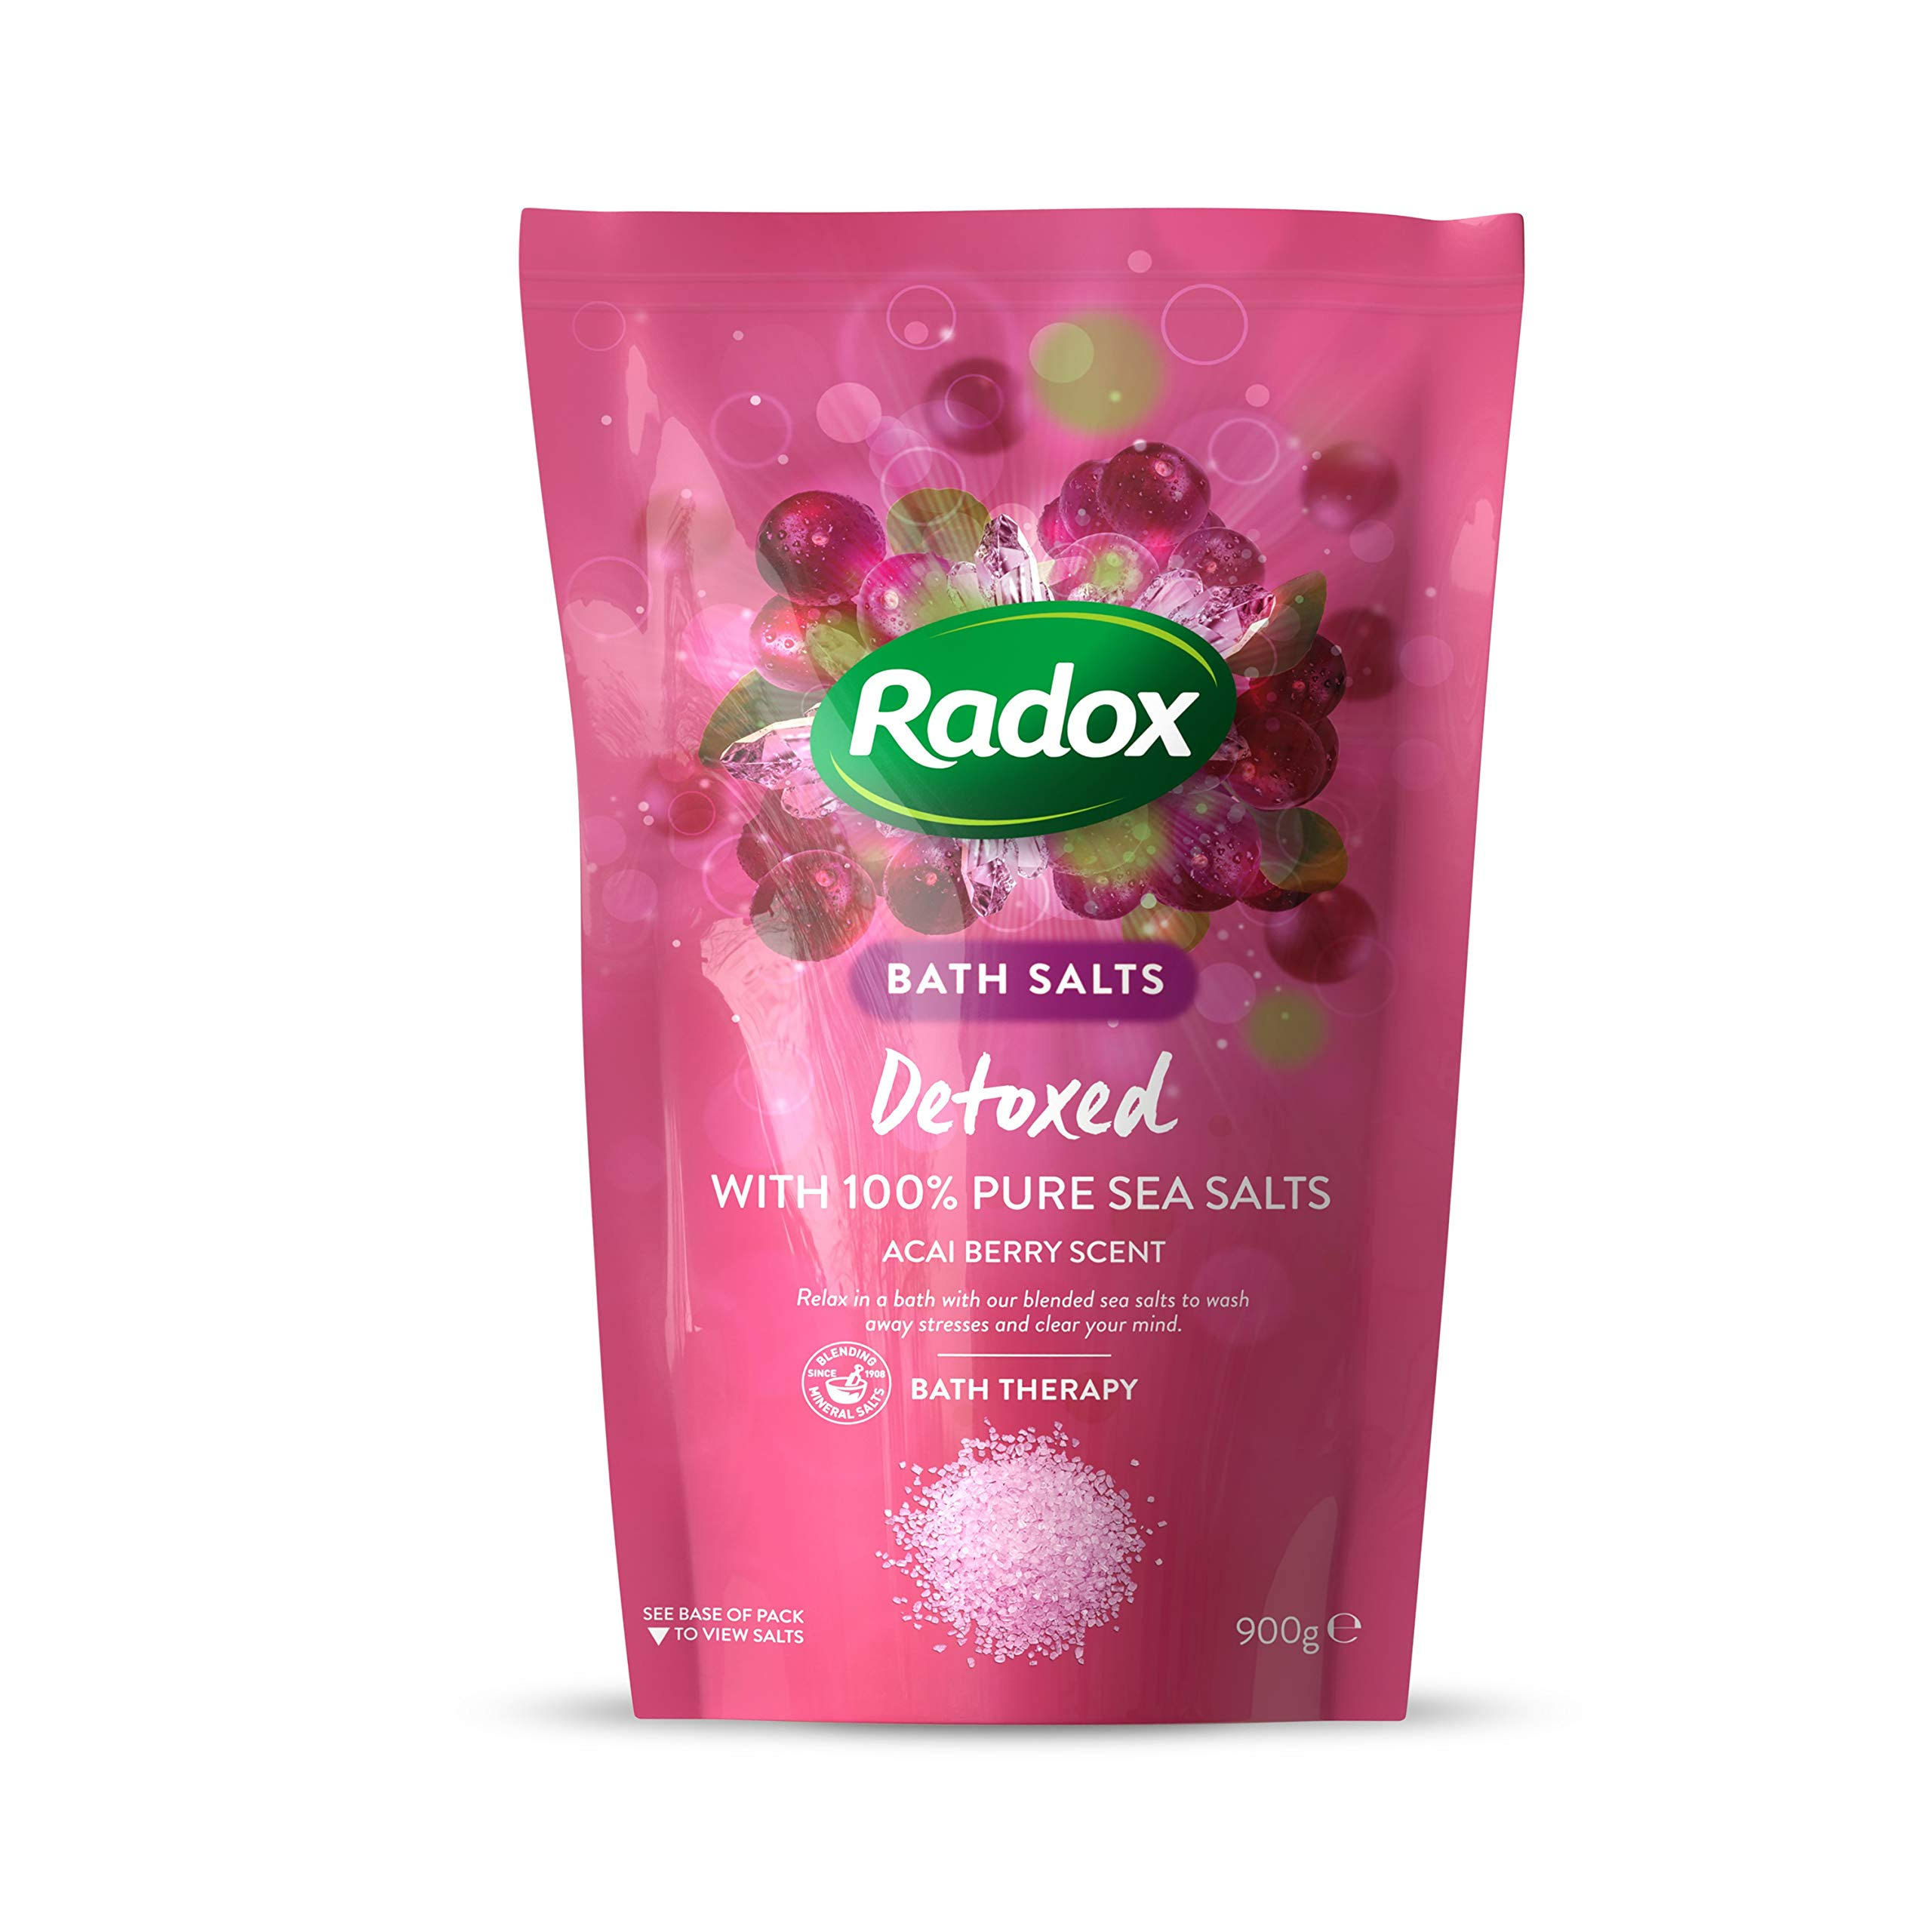 Radox Detoxed Bath Salts 900g